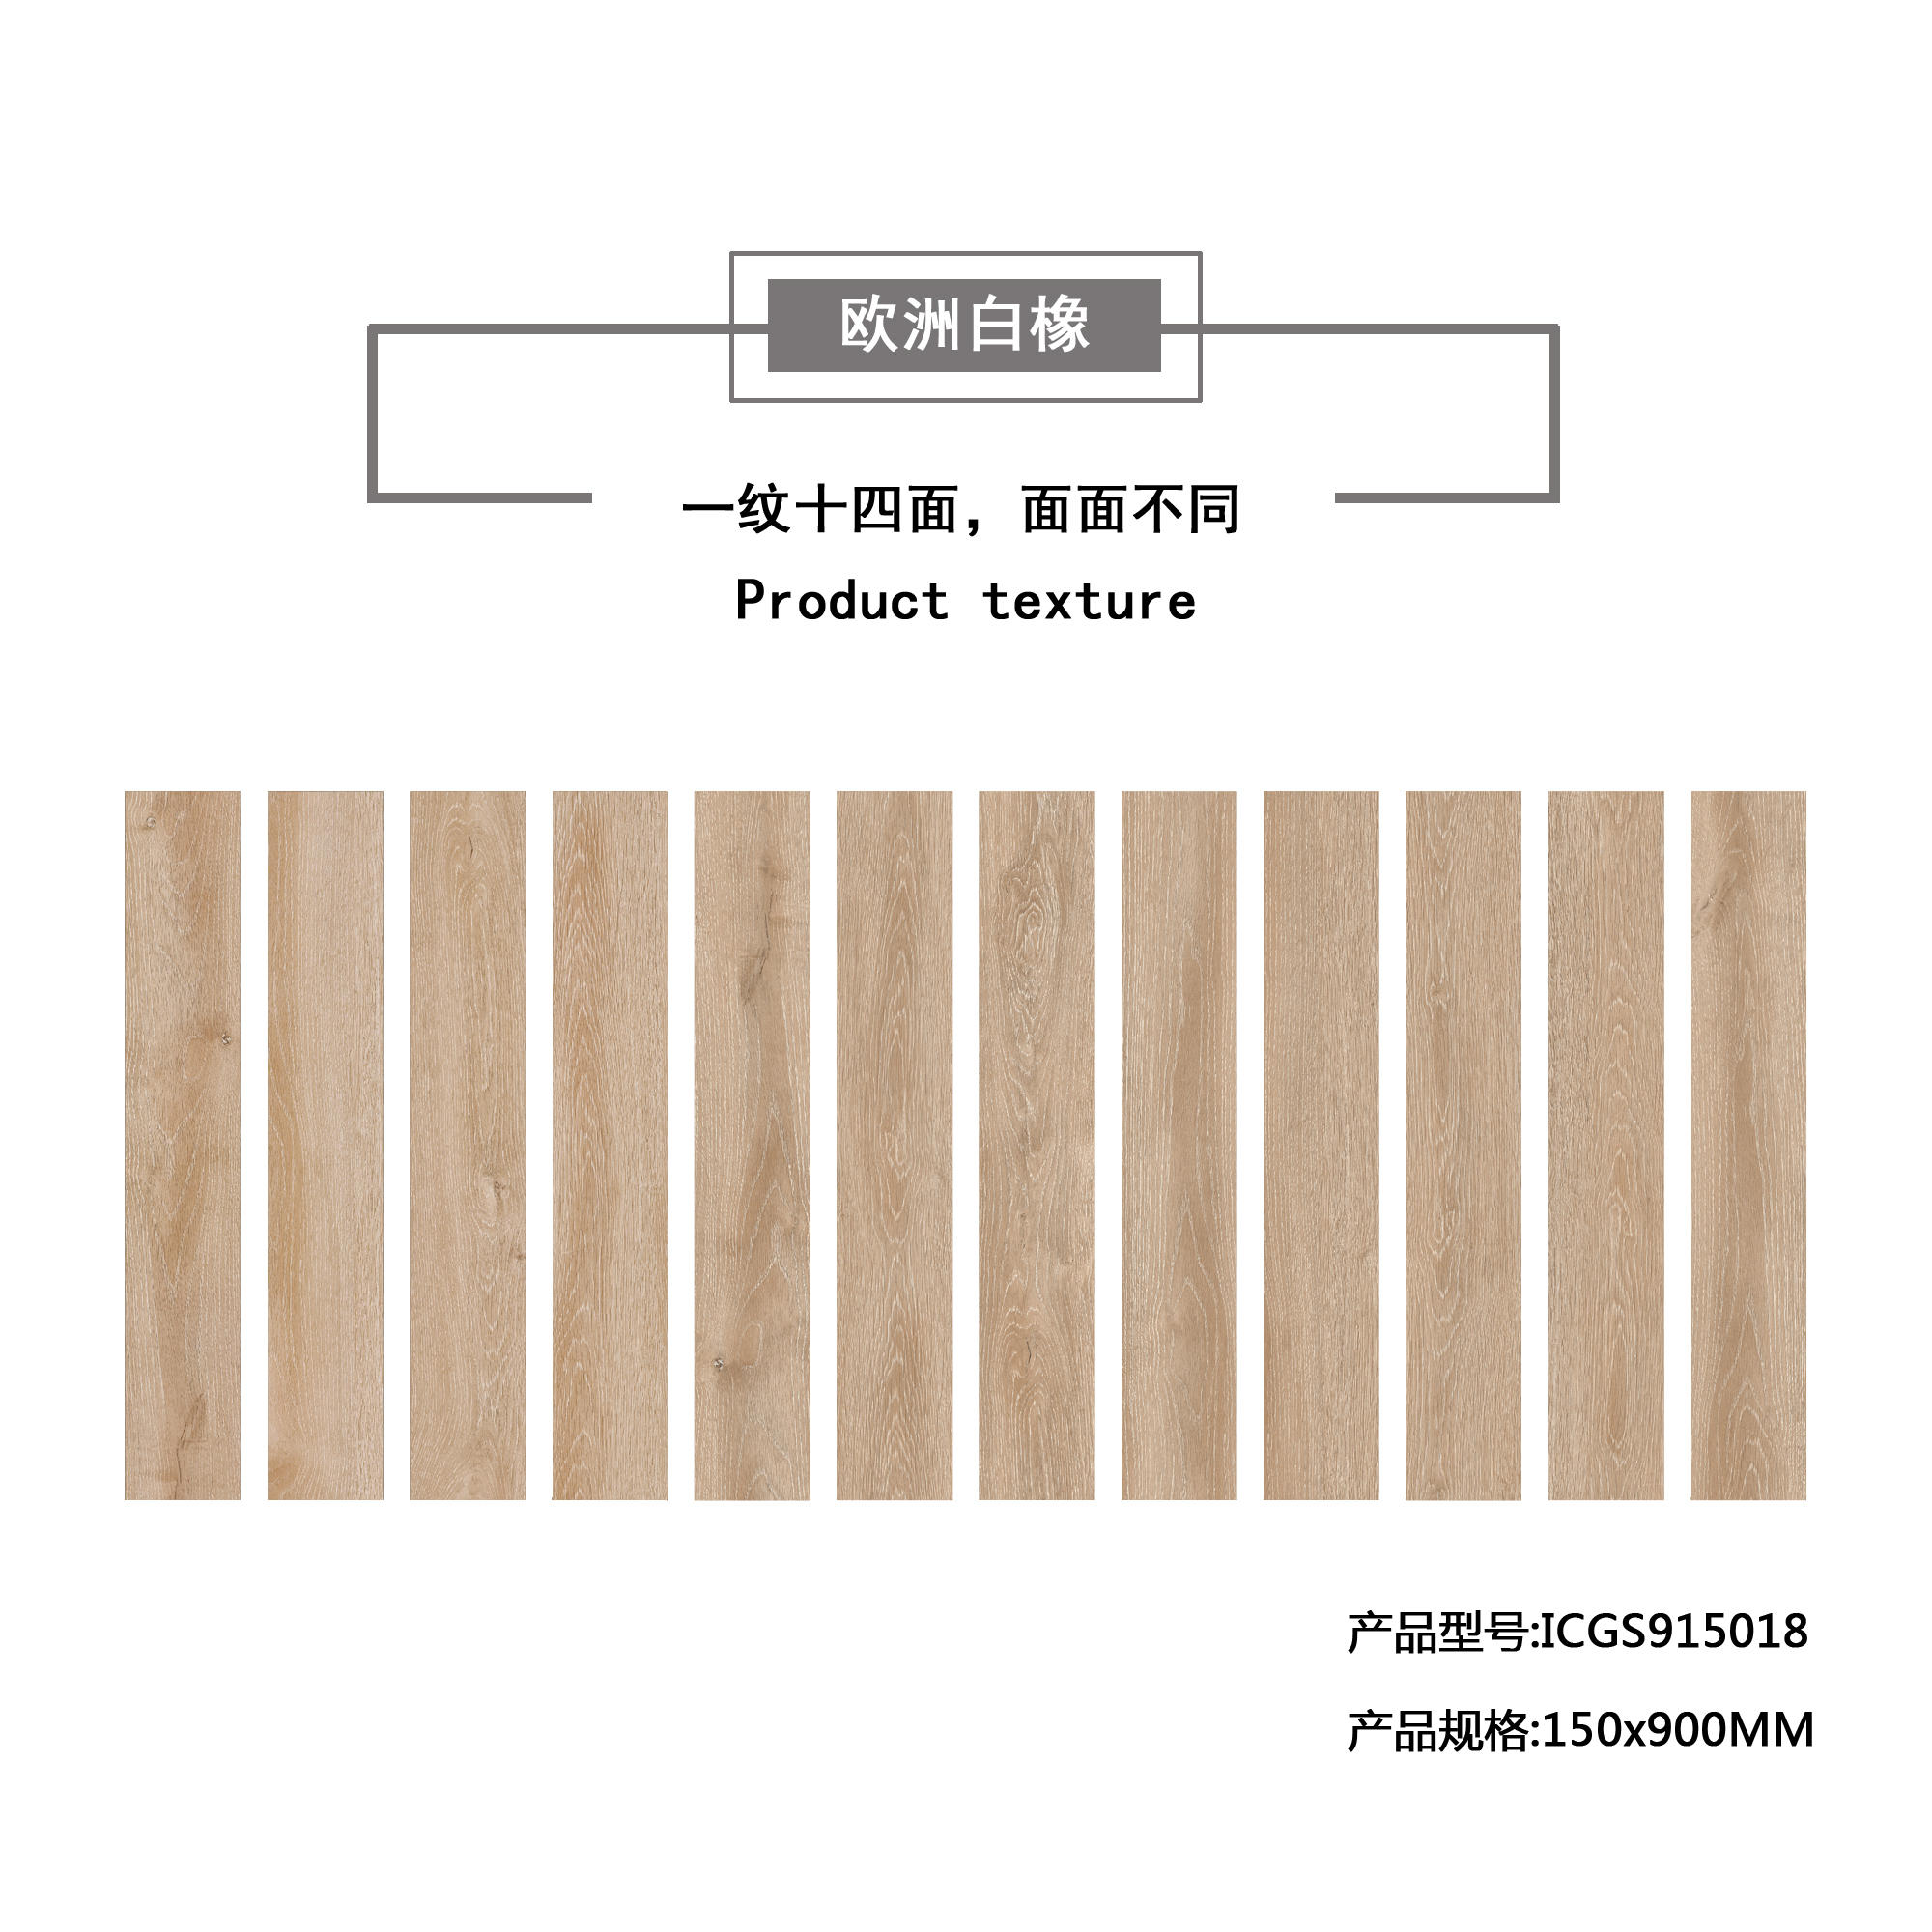 欧洲白橡（杏黄）木纹地板砖ICGS915018产品混铺图